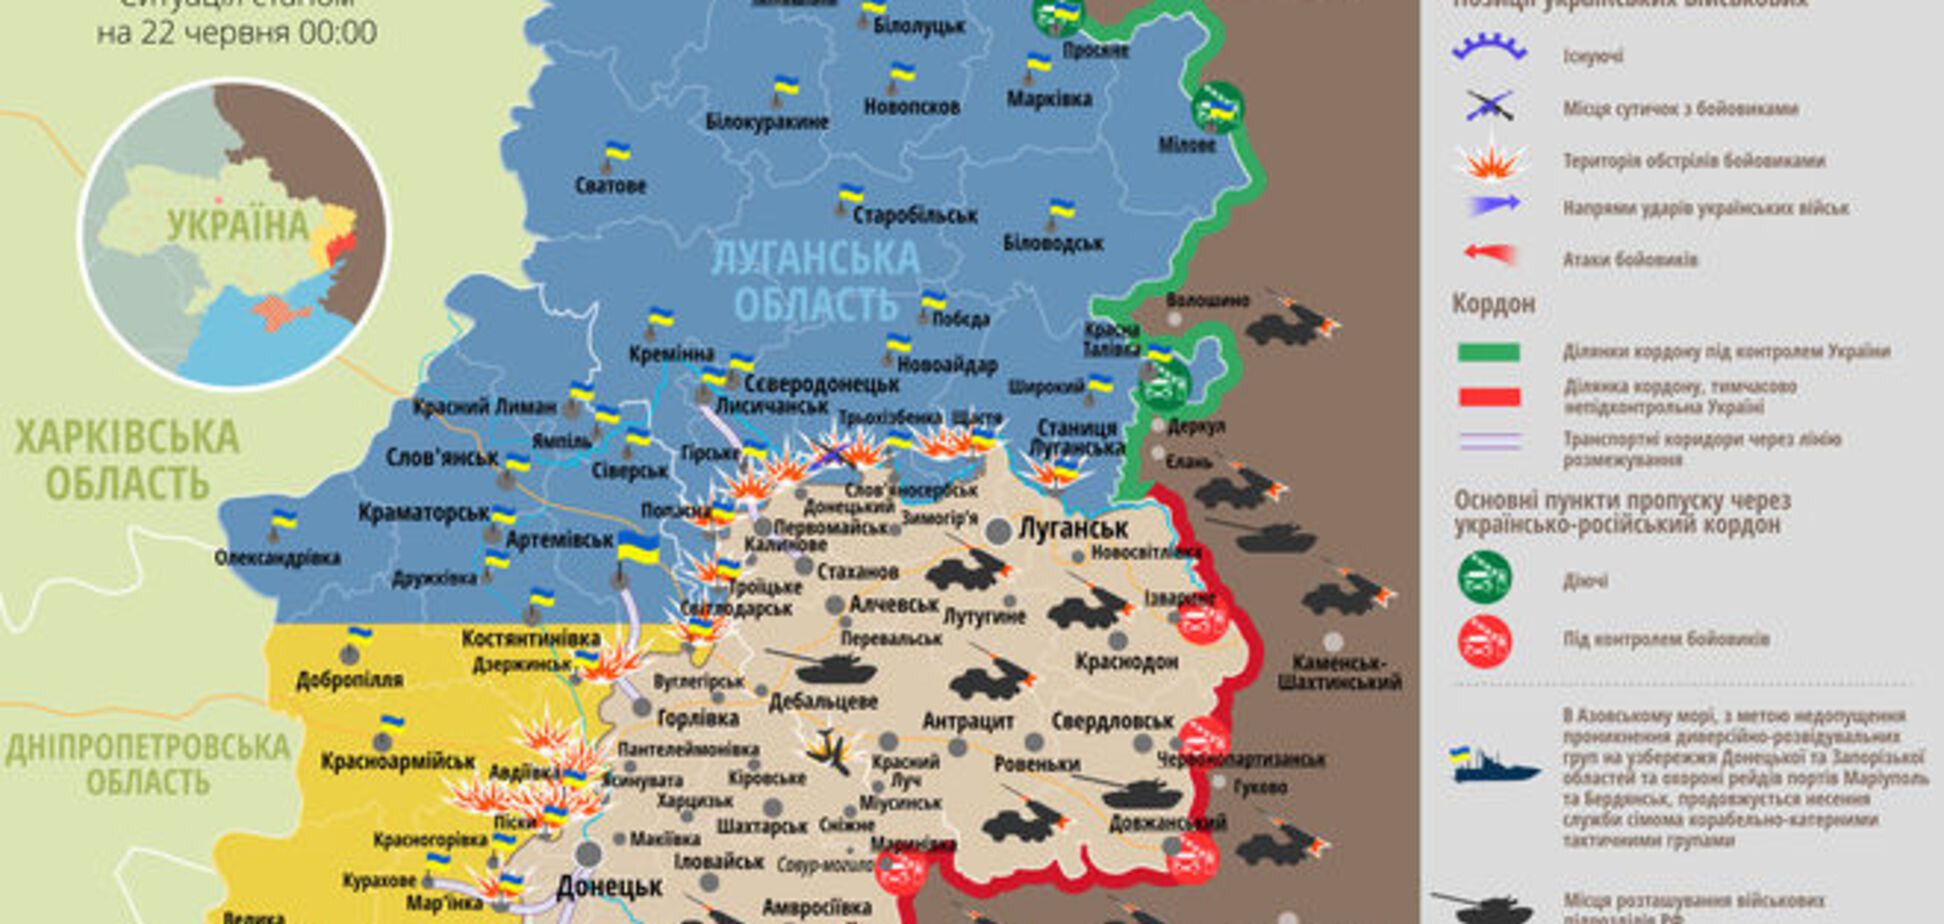 Террористы сосредоточили огонь на Донецком направлении: карта АТО